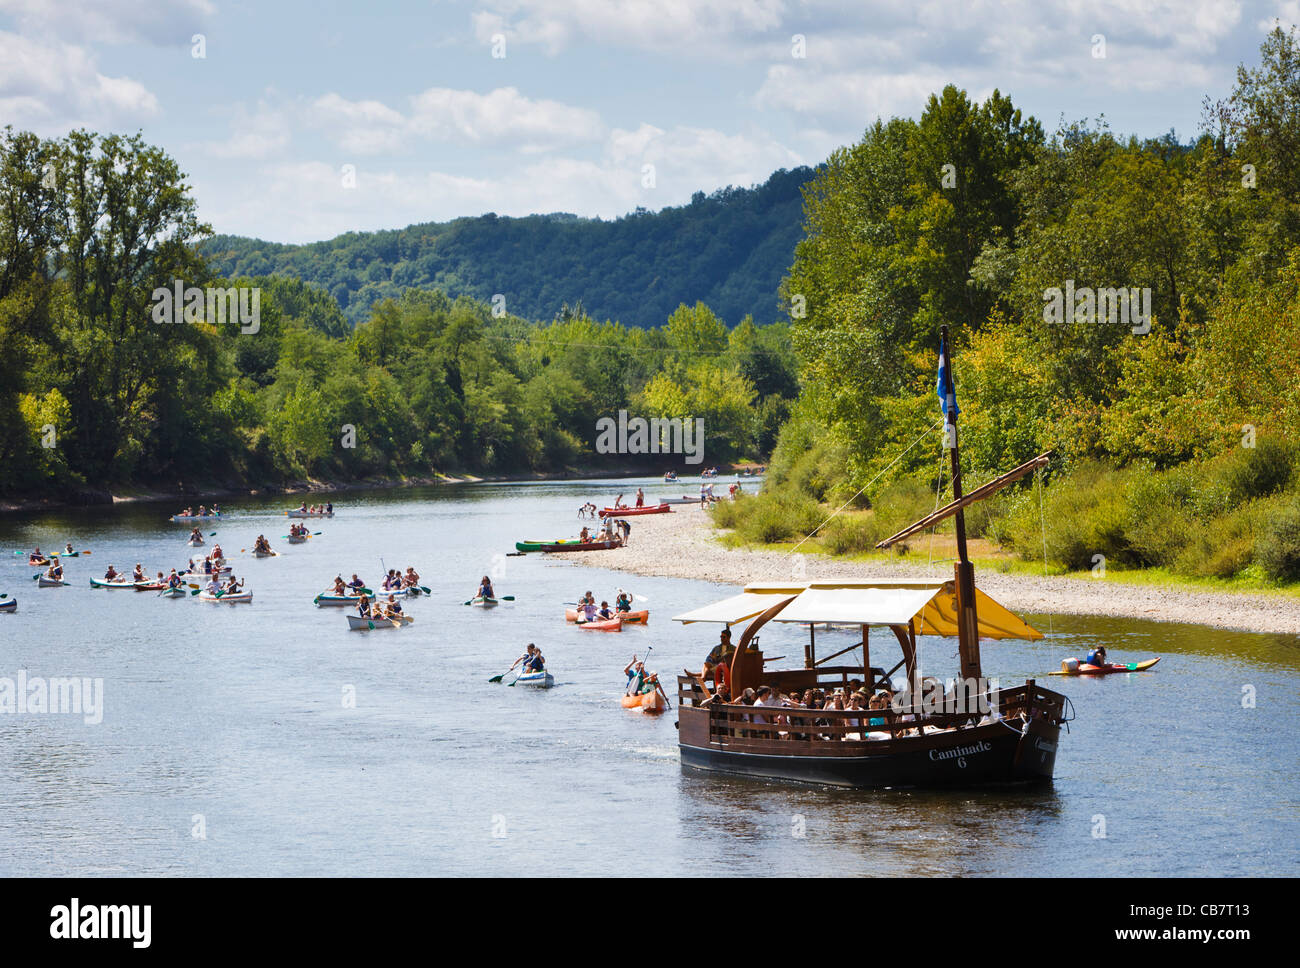 Fiume Dordogne - La barca turistica e persone in canoa sul fiume Dordogne, Francia, Europa Foto Stock